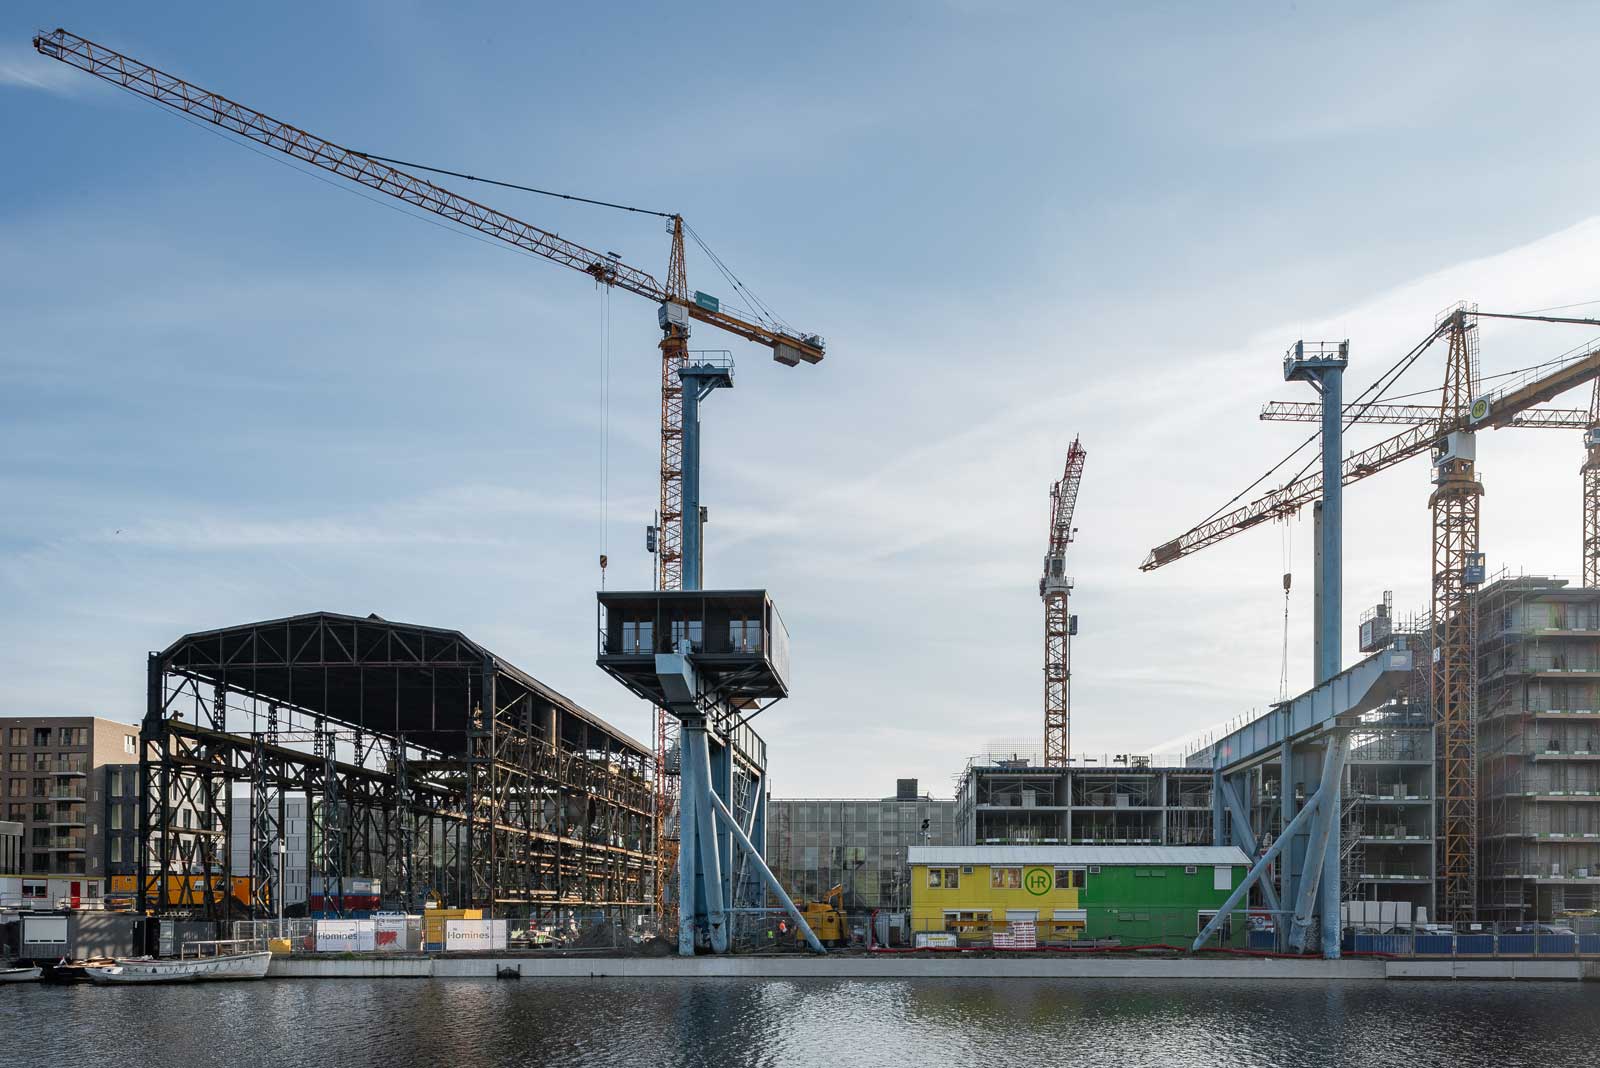 Construction starts at Oostenburg